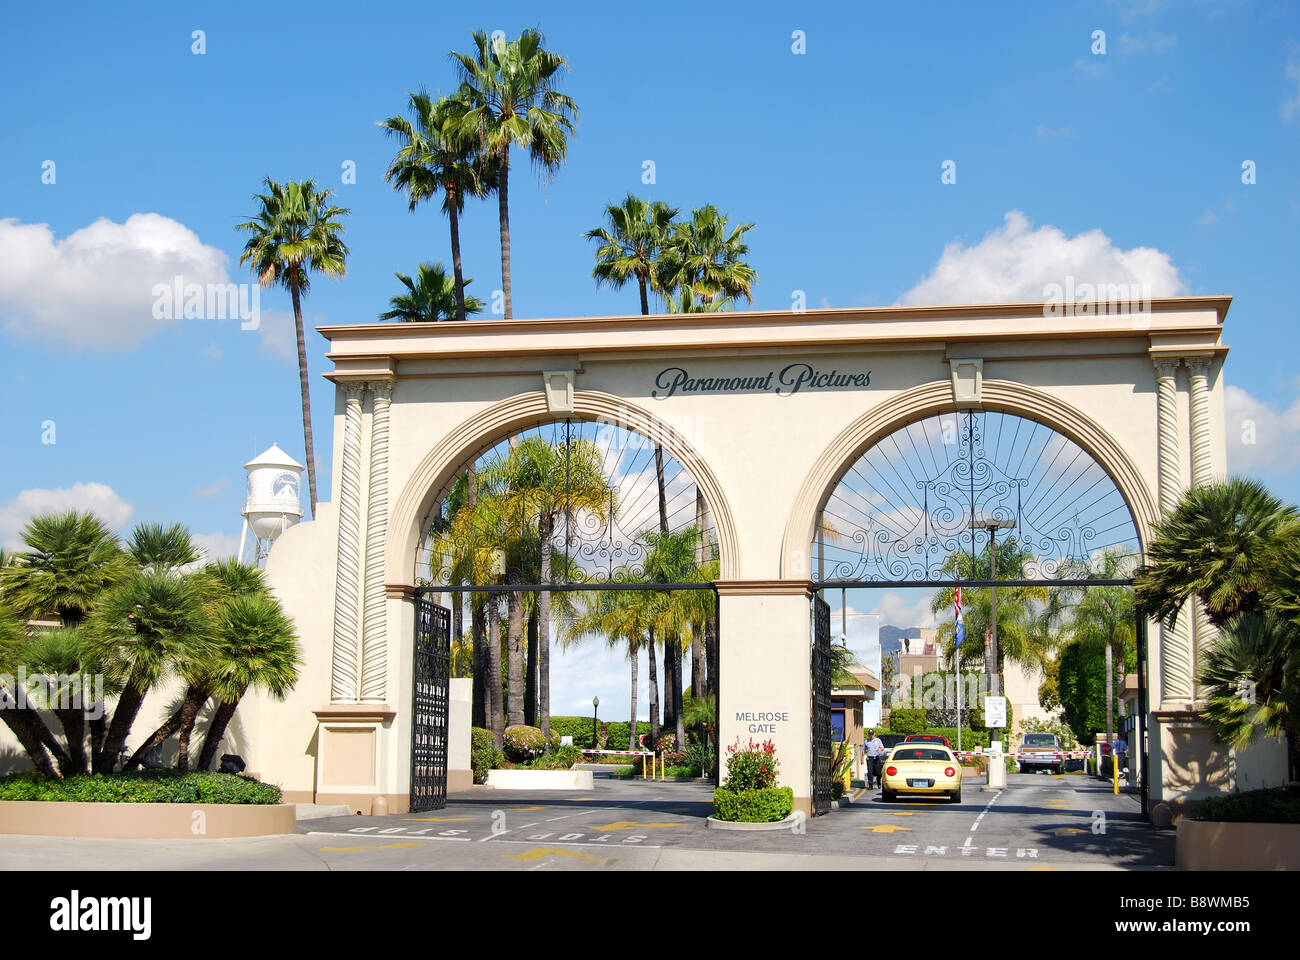 Entrée de studios Paramount, Melrose Avenue, Hollywood, Los Angeles, Californie, États-Unis d'Amérique Banque D'Images